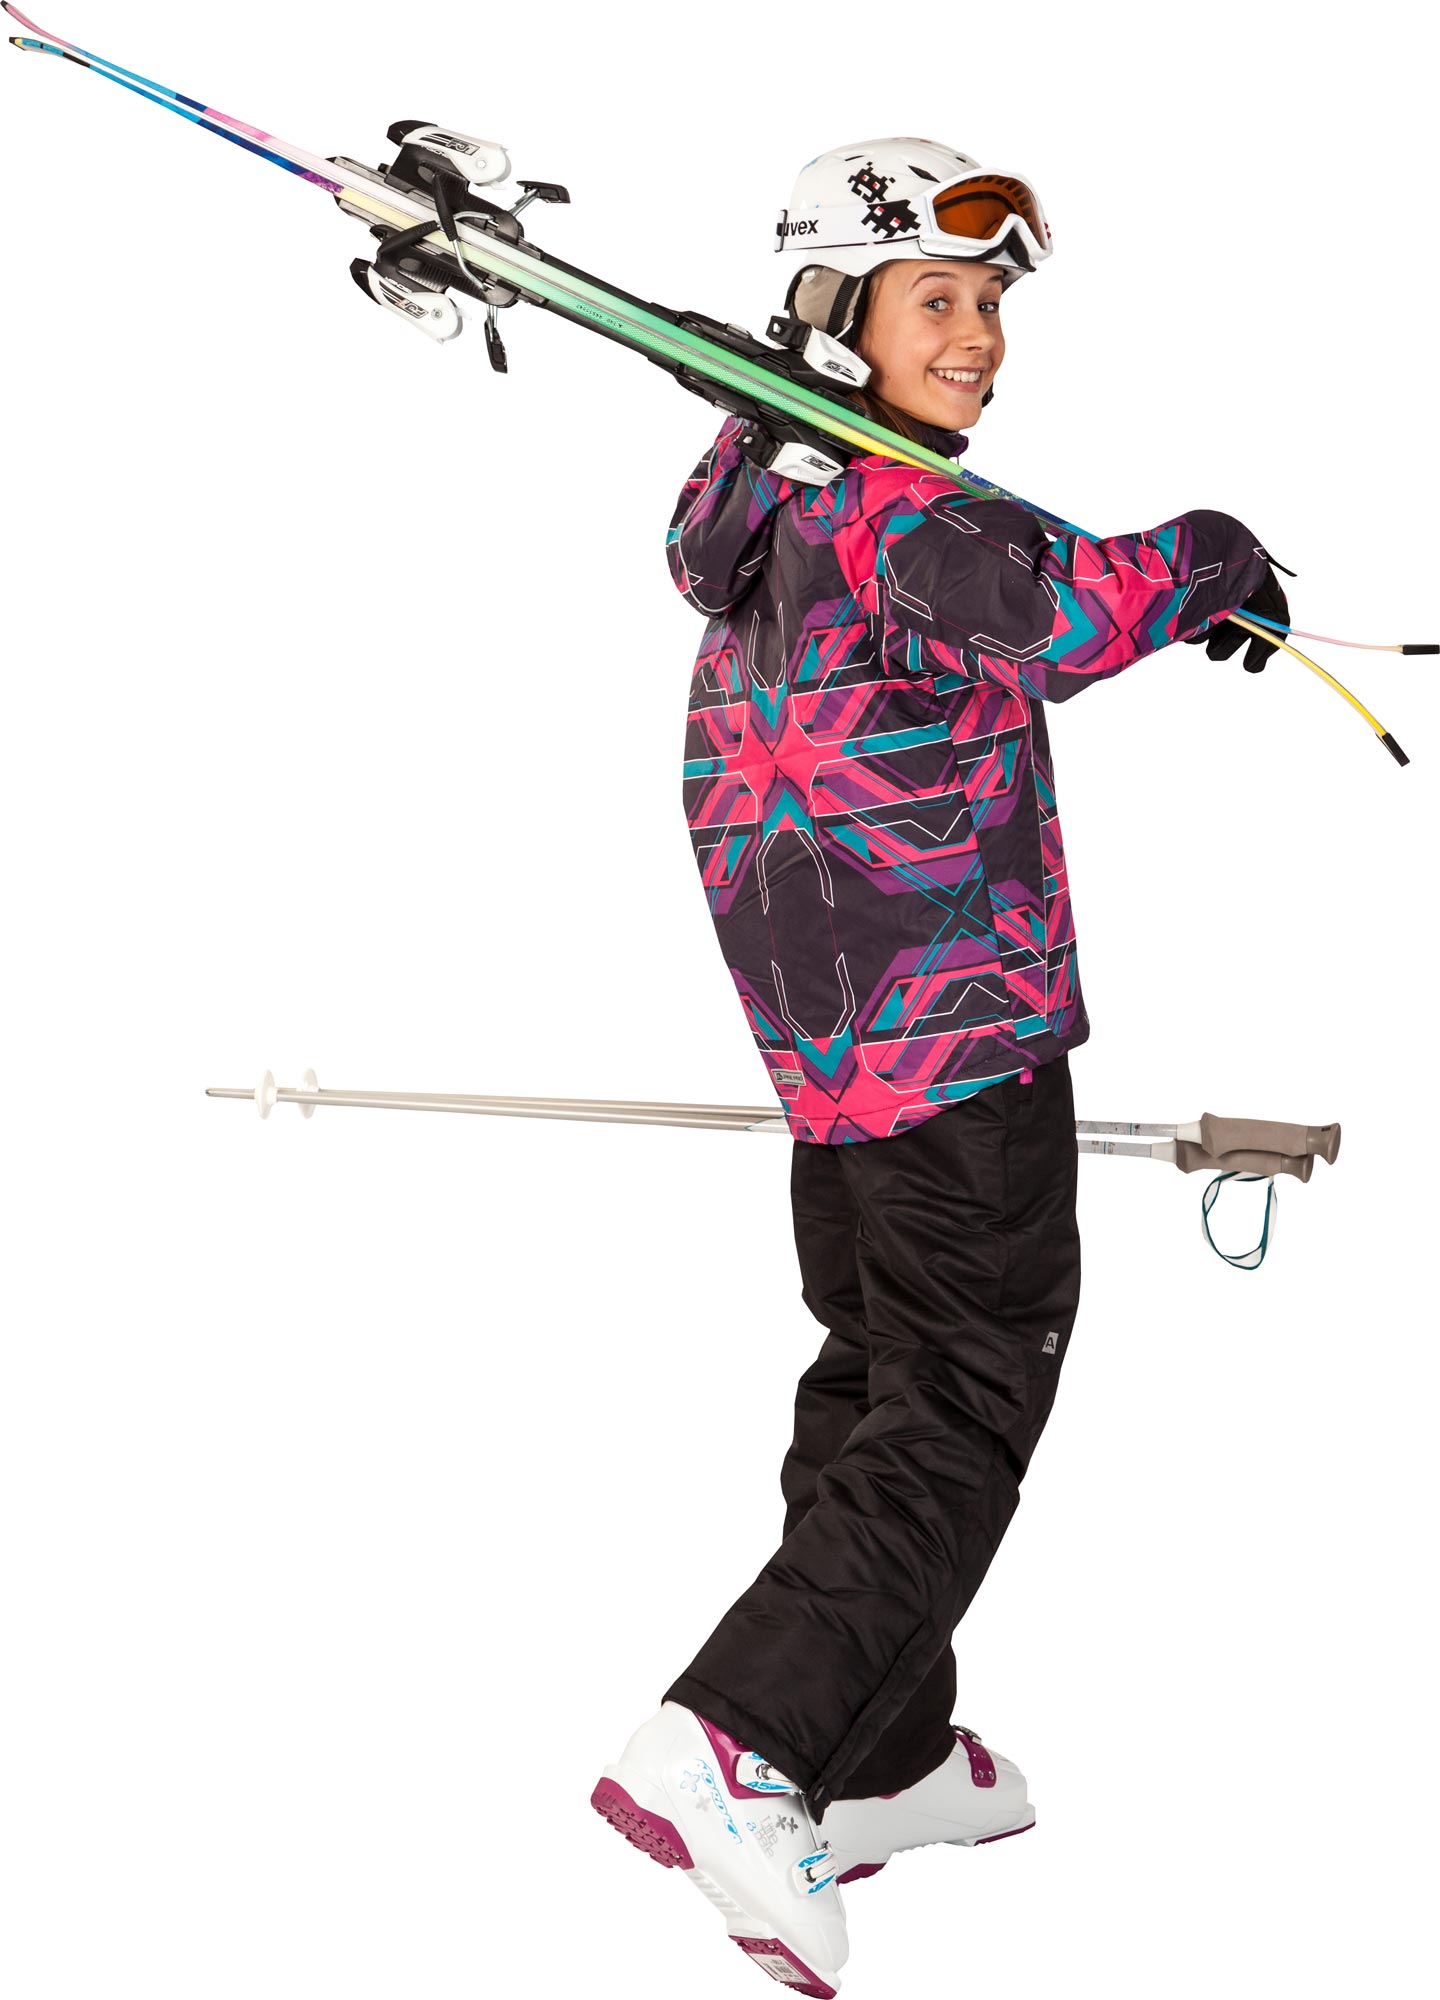 CARSON - Girls' Ski Jacket